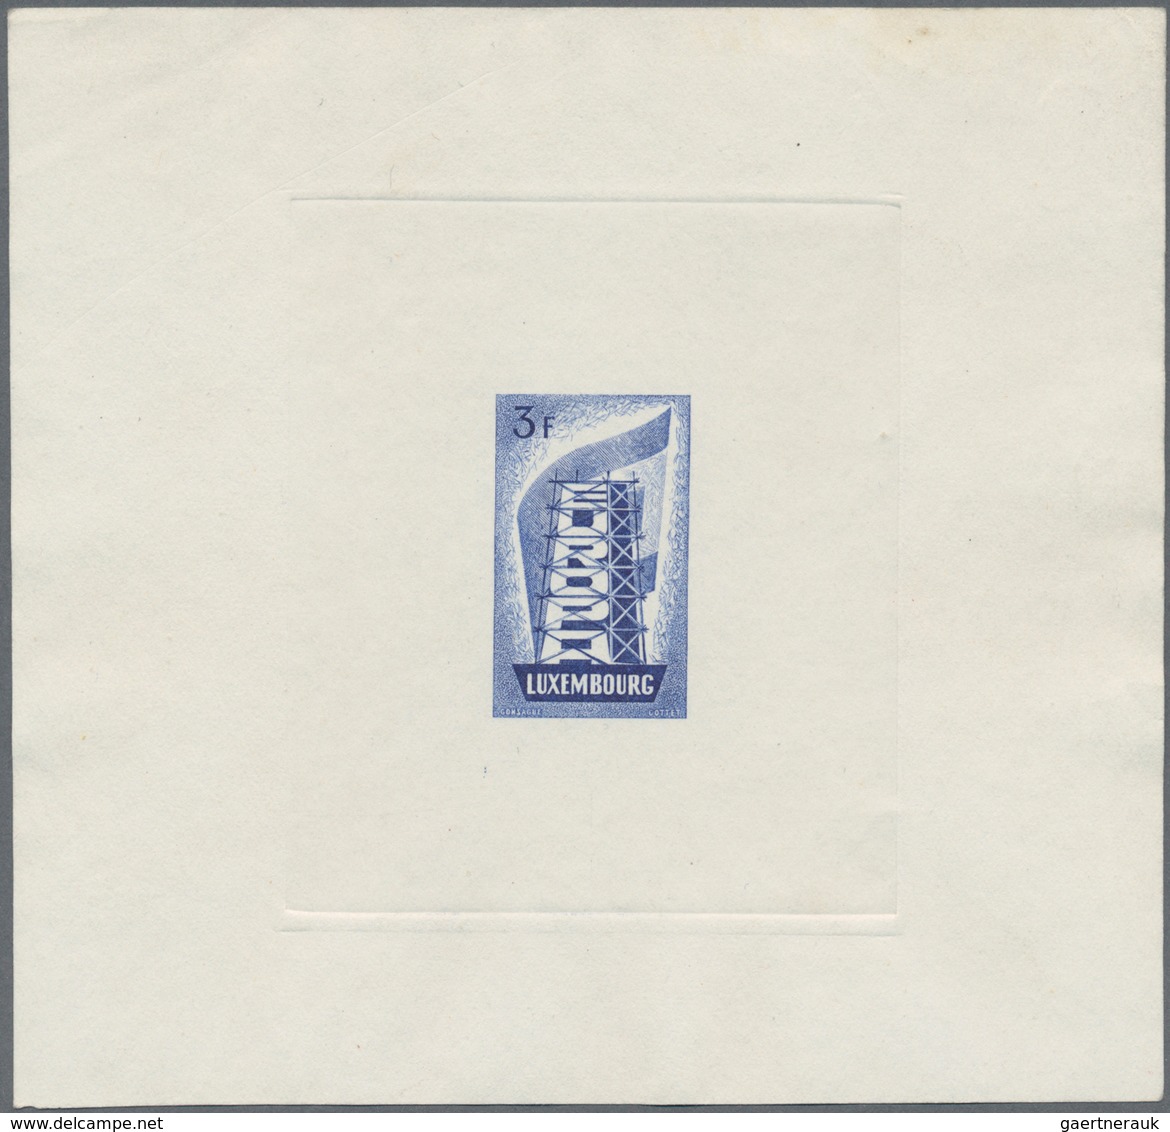 Luxemburg: 1956, 3 F. Europa Künstlerentwurf In Blau Auf Büttenpapier. Sehr Selten - Covers & Documents